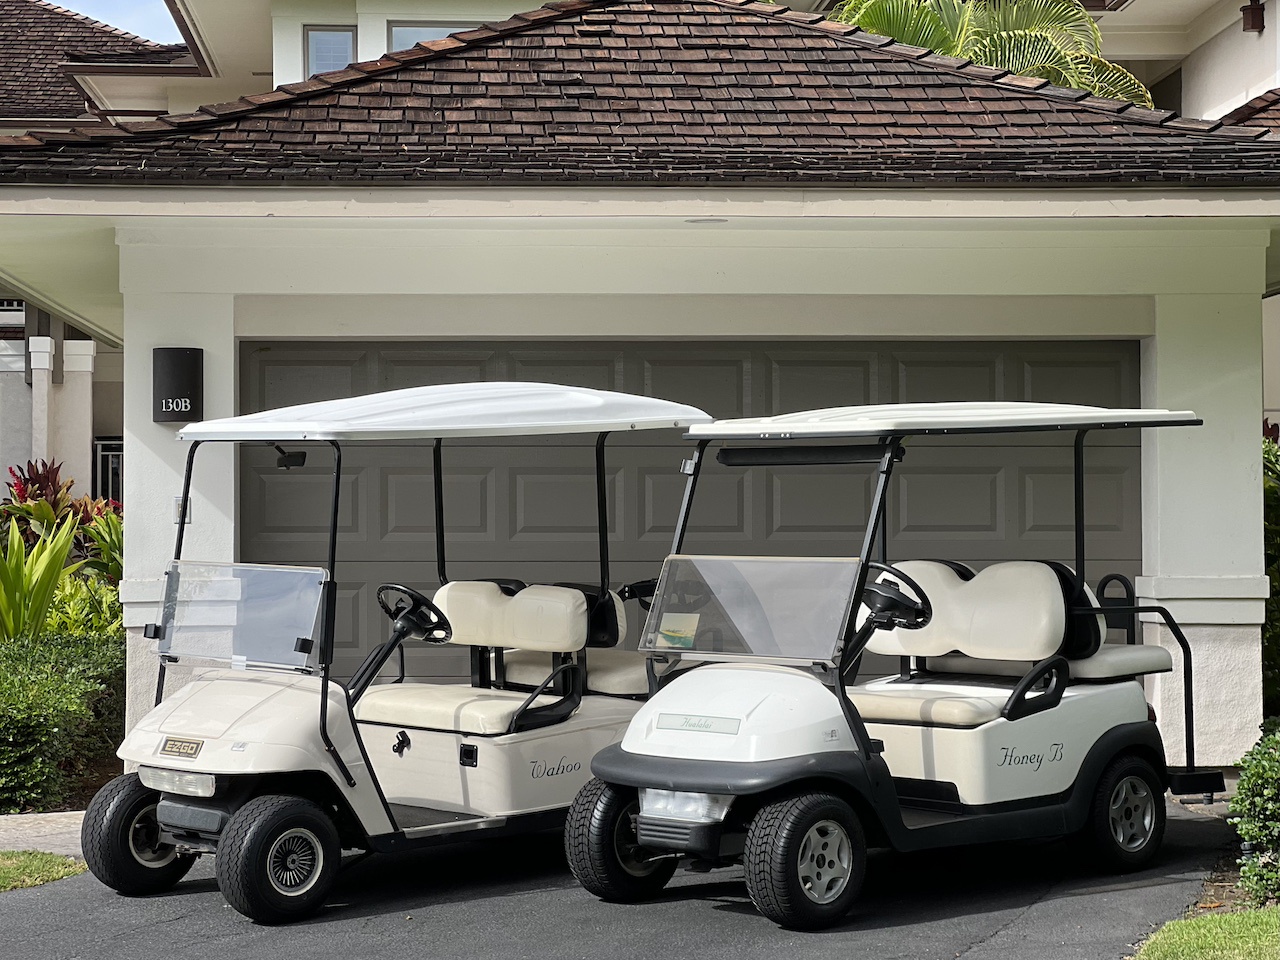 Kailua Kona Vacation Rentals, 3BD Palm Villa (130B) at Four Seasons Resort at Hualalai - This rental comes with TWO 4-seater golf carts!